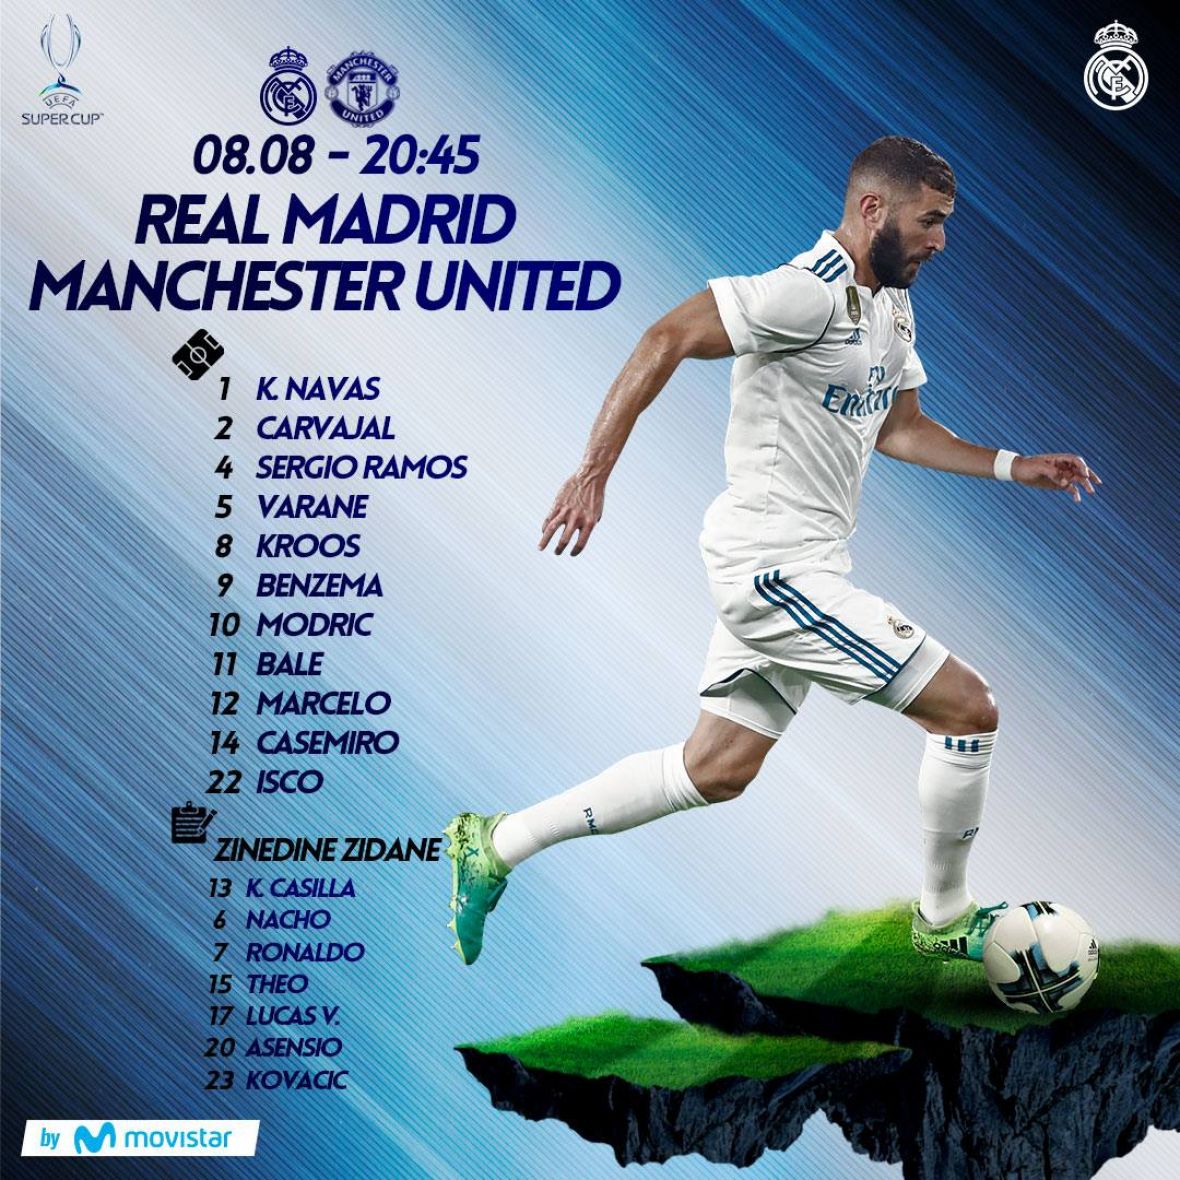 Real_Madrid_Postava_Superkup.jpg - undefined